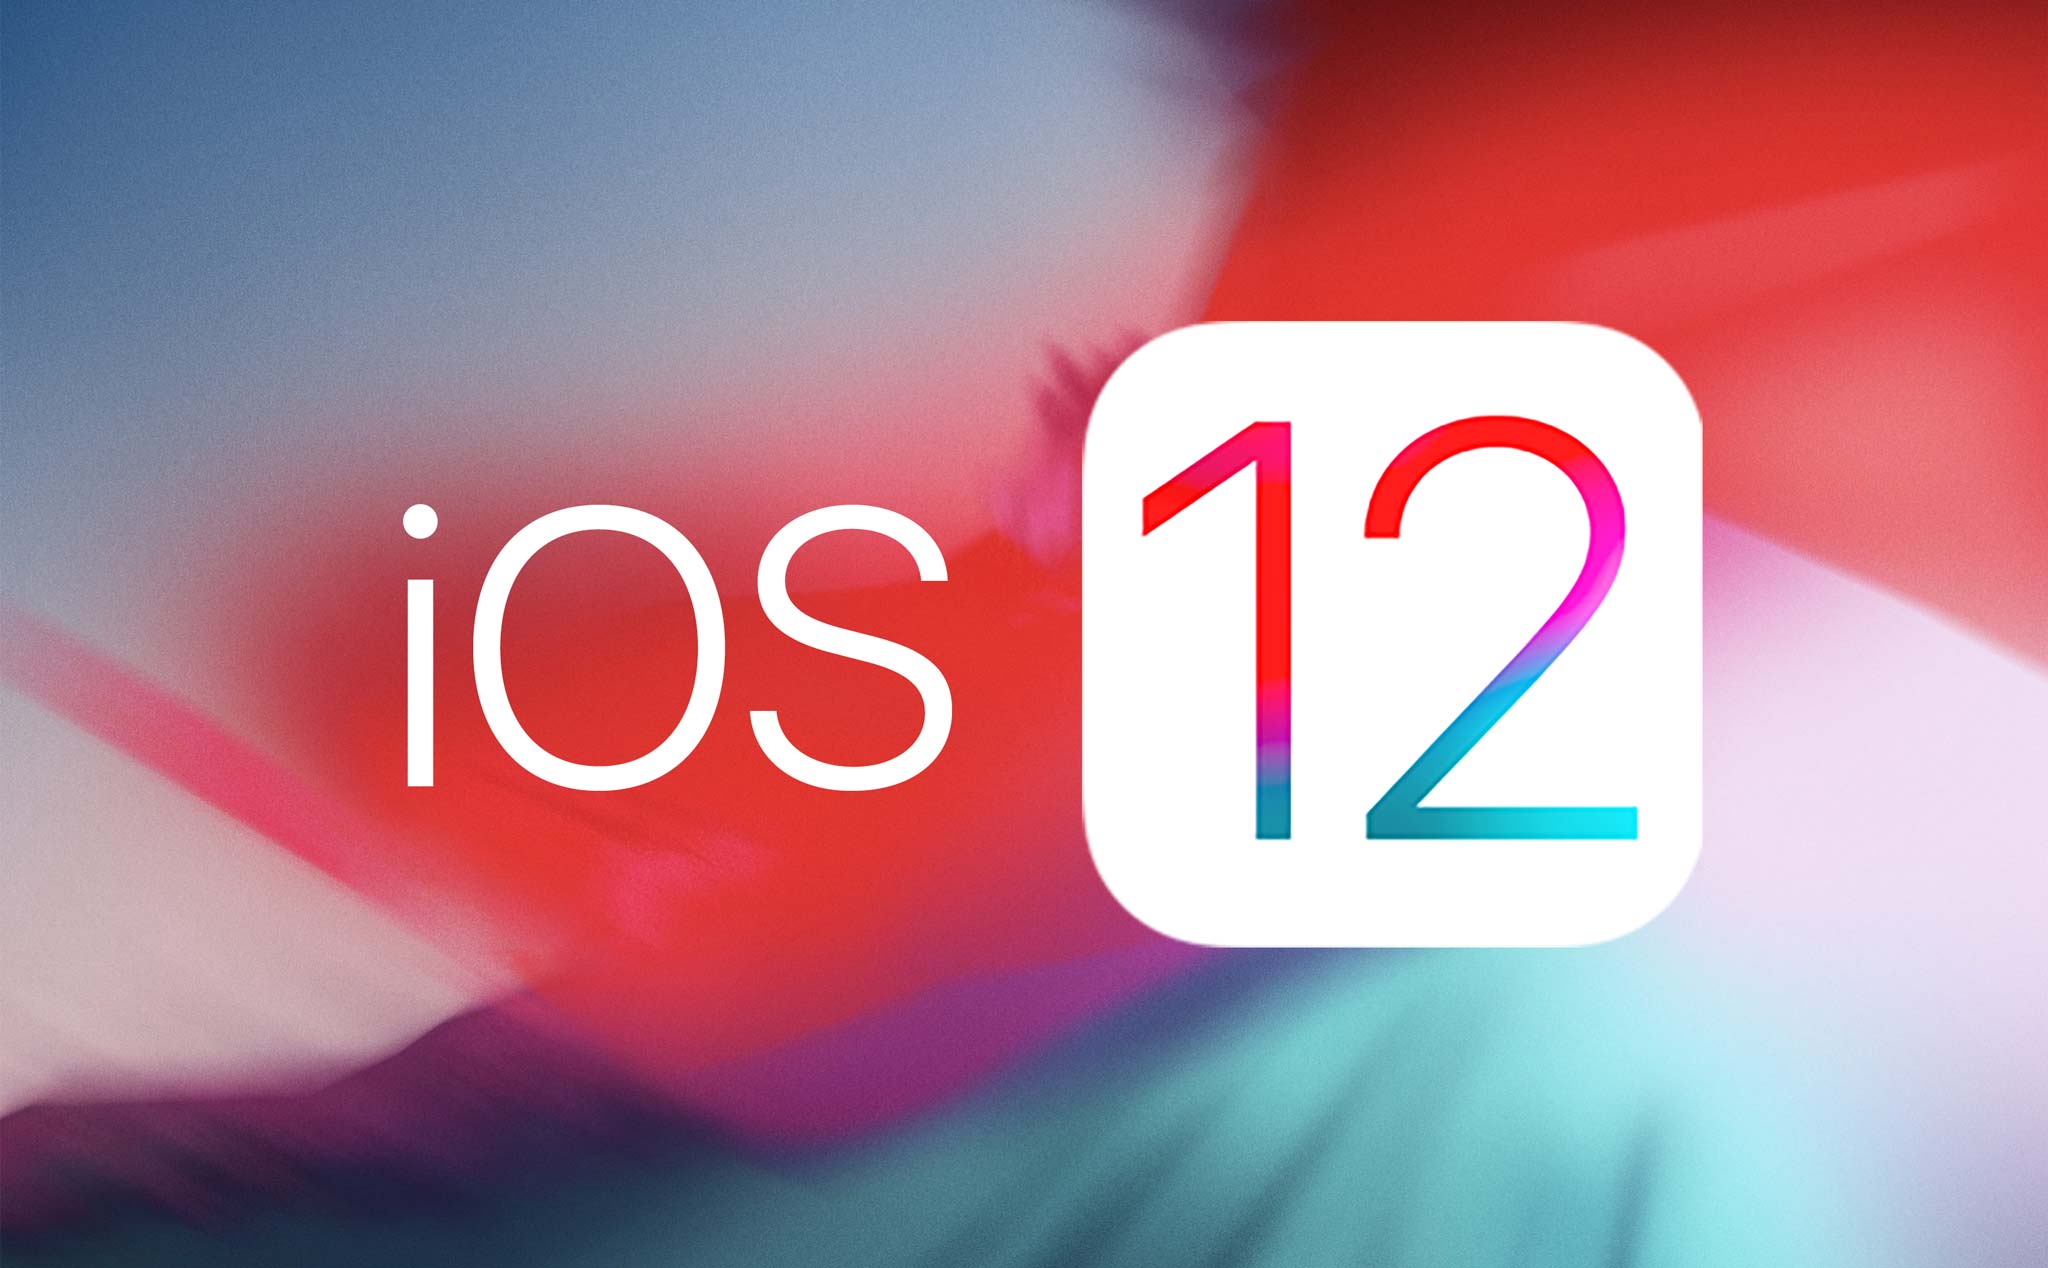 Anh em lên iOS 12 thấy sao? Nhanh không, hao pin không, thích tính năng nào nhất?